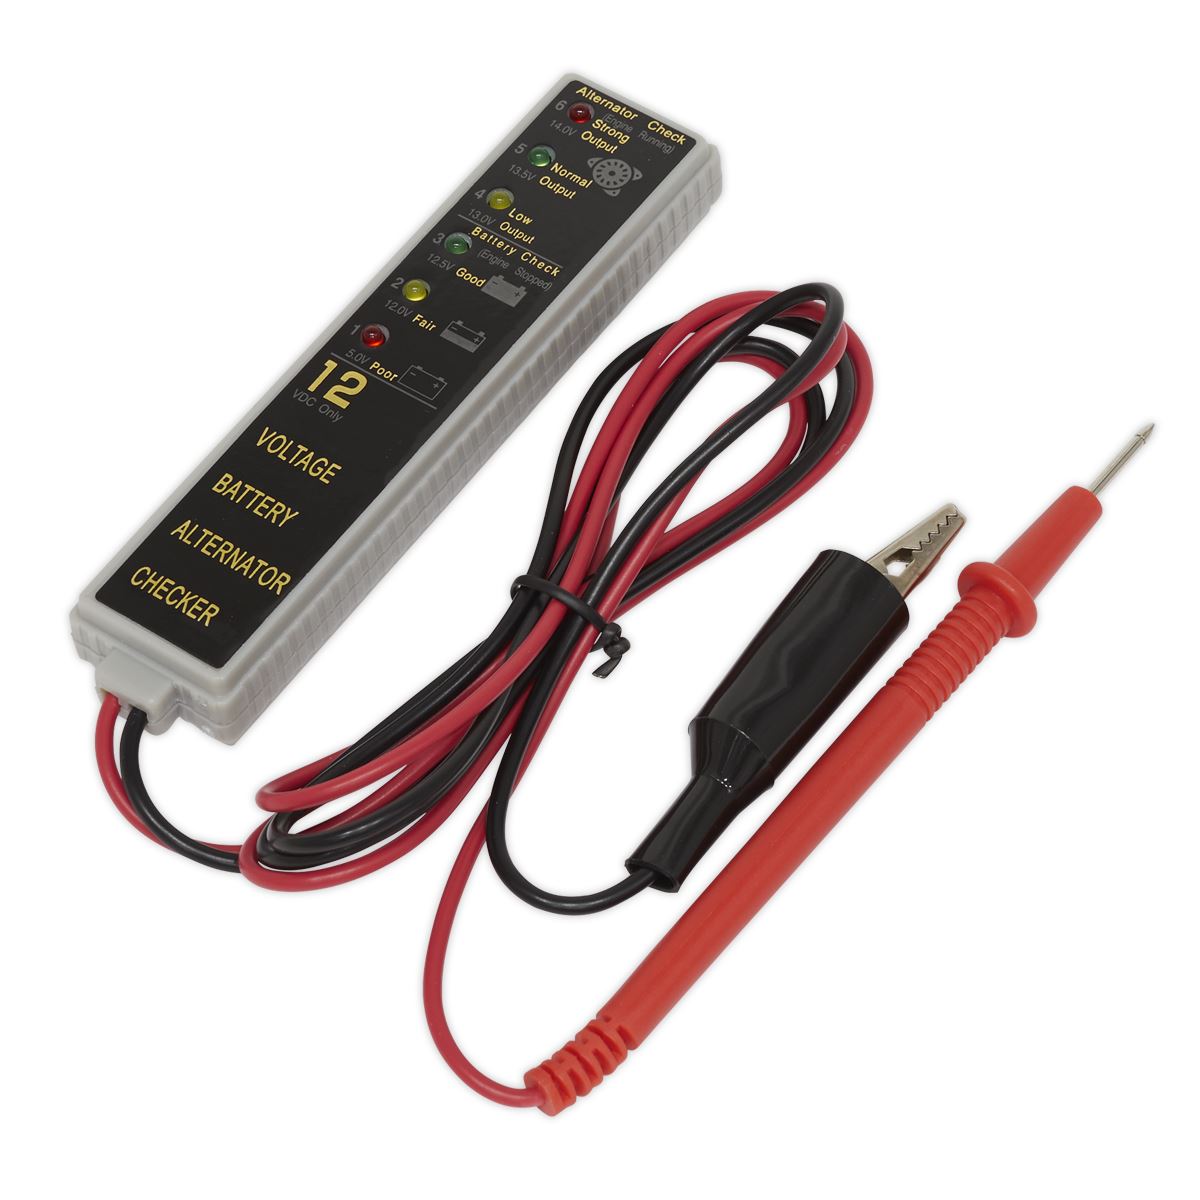 Sealey Battery & Alternator Tester 12V LED